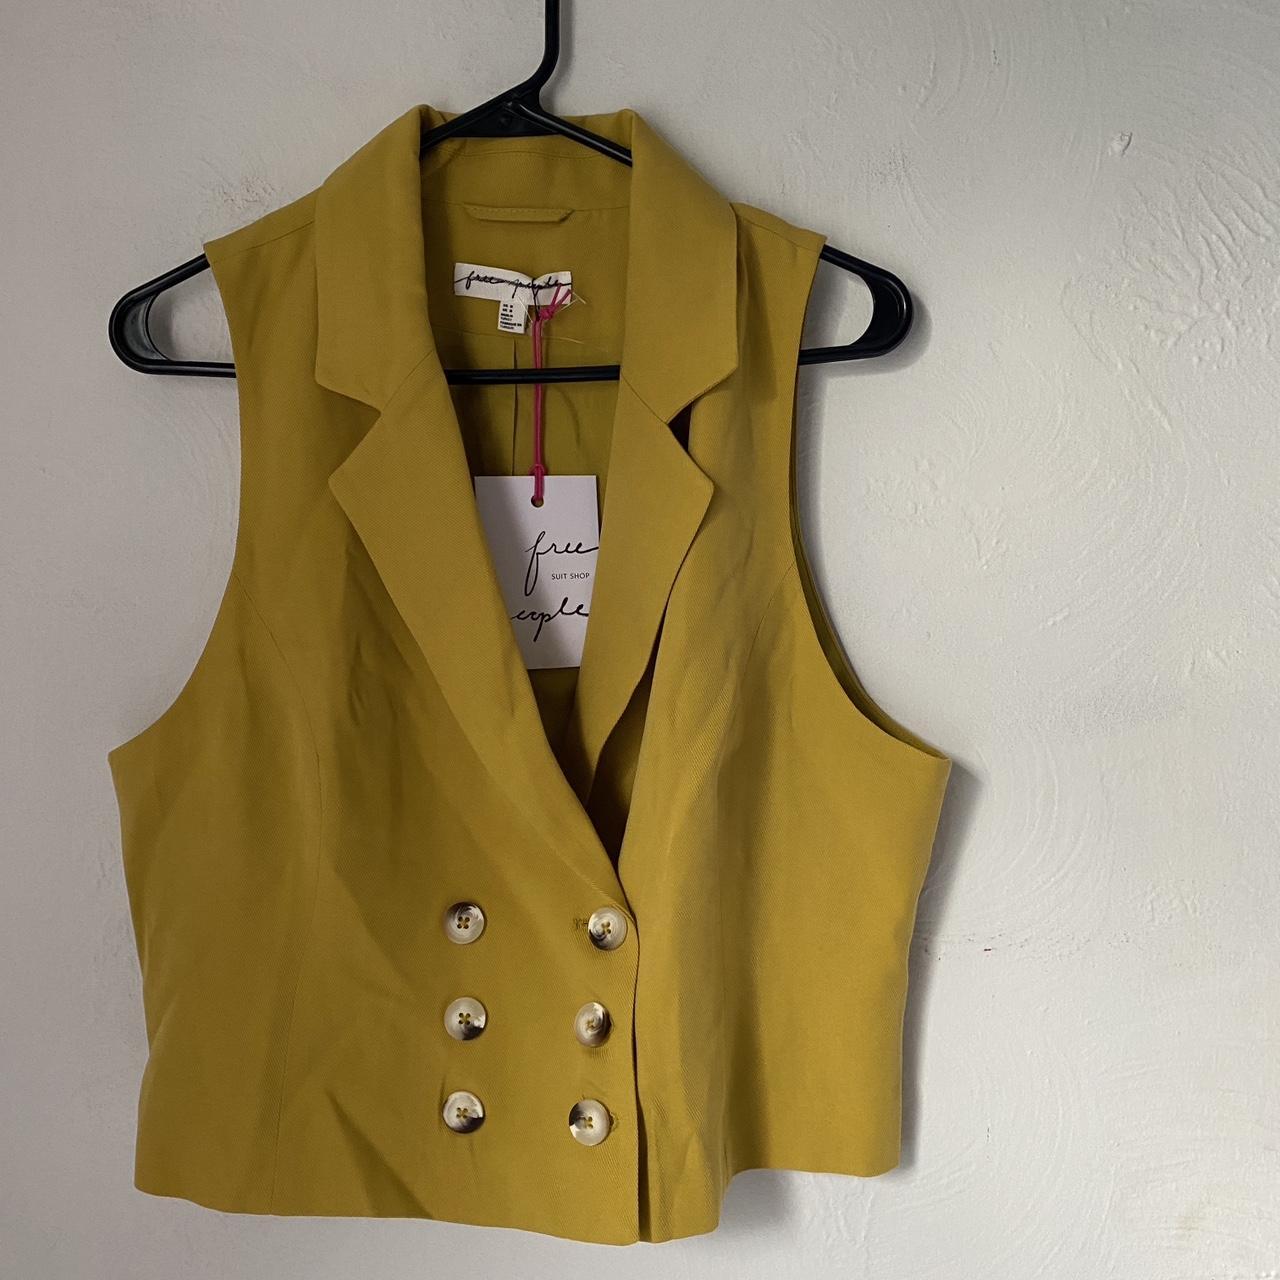 Vogrtcc Formal Vest Women Suit Coat Tops Officebusiness Waistcoat  Sleeveless Jacket at Amazon Women's Coats Shop